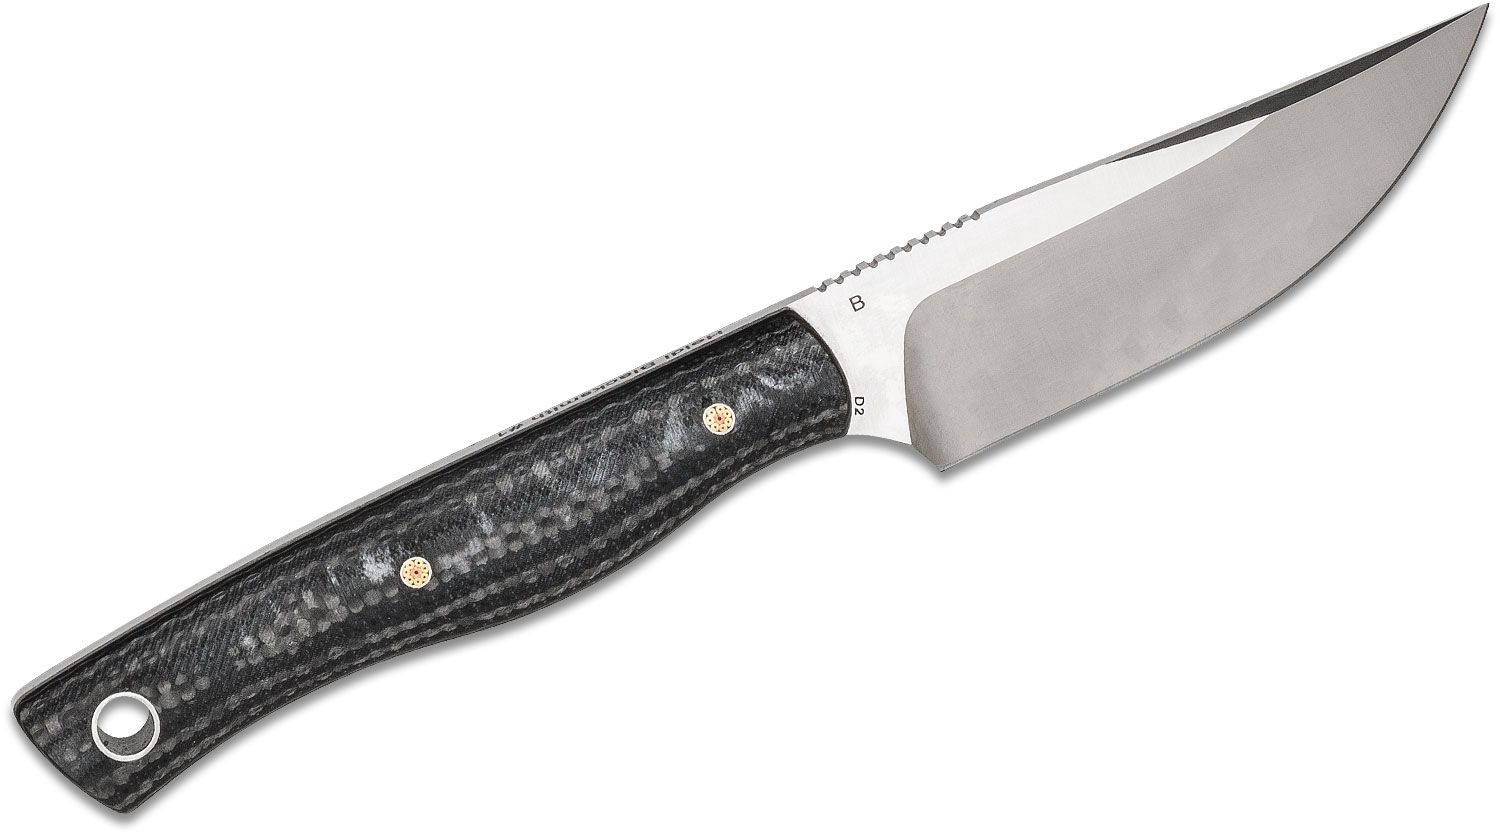 Bestech Knives Heidi Blacksmith #1 Fixed Blade Knife 3.15